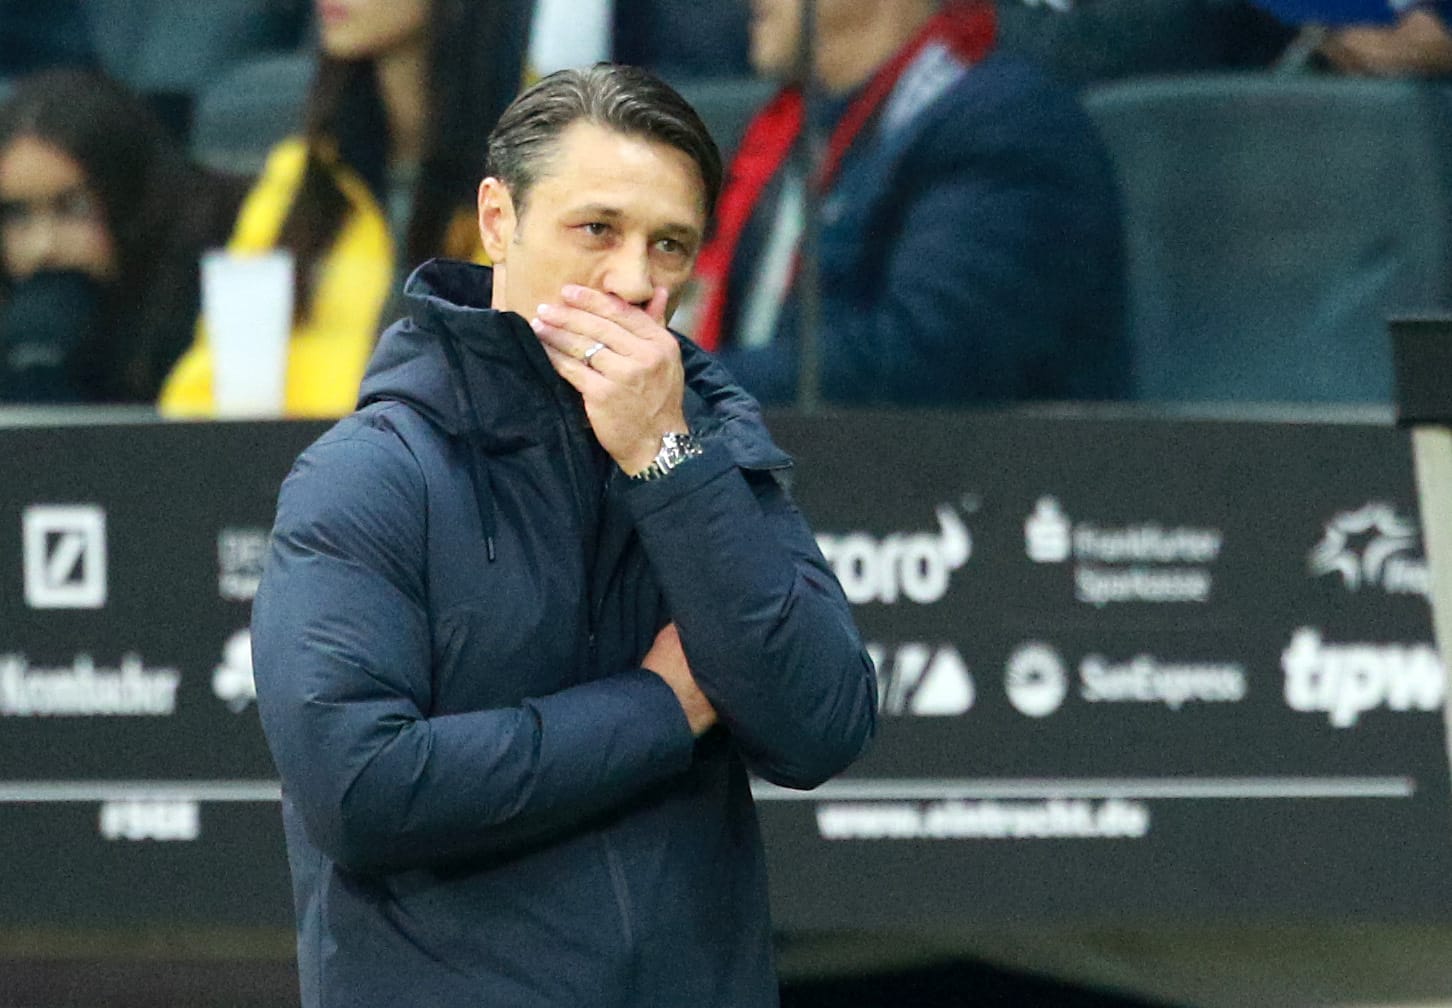 "Sport" (Spanien): "Es ist offiziell. Die Wege von Niko Kovac und Bayern München haben sich getrennt. Die Niederlage gegen Frankfurt war der Tropfen, der das Fass zum Überlaufen gebracht hat."